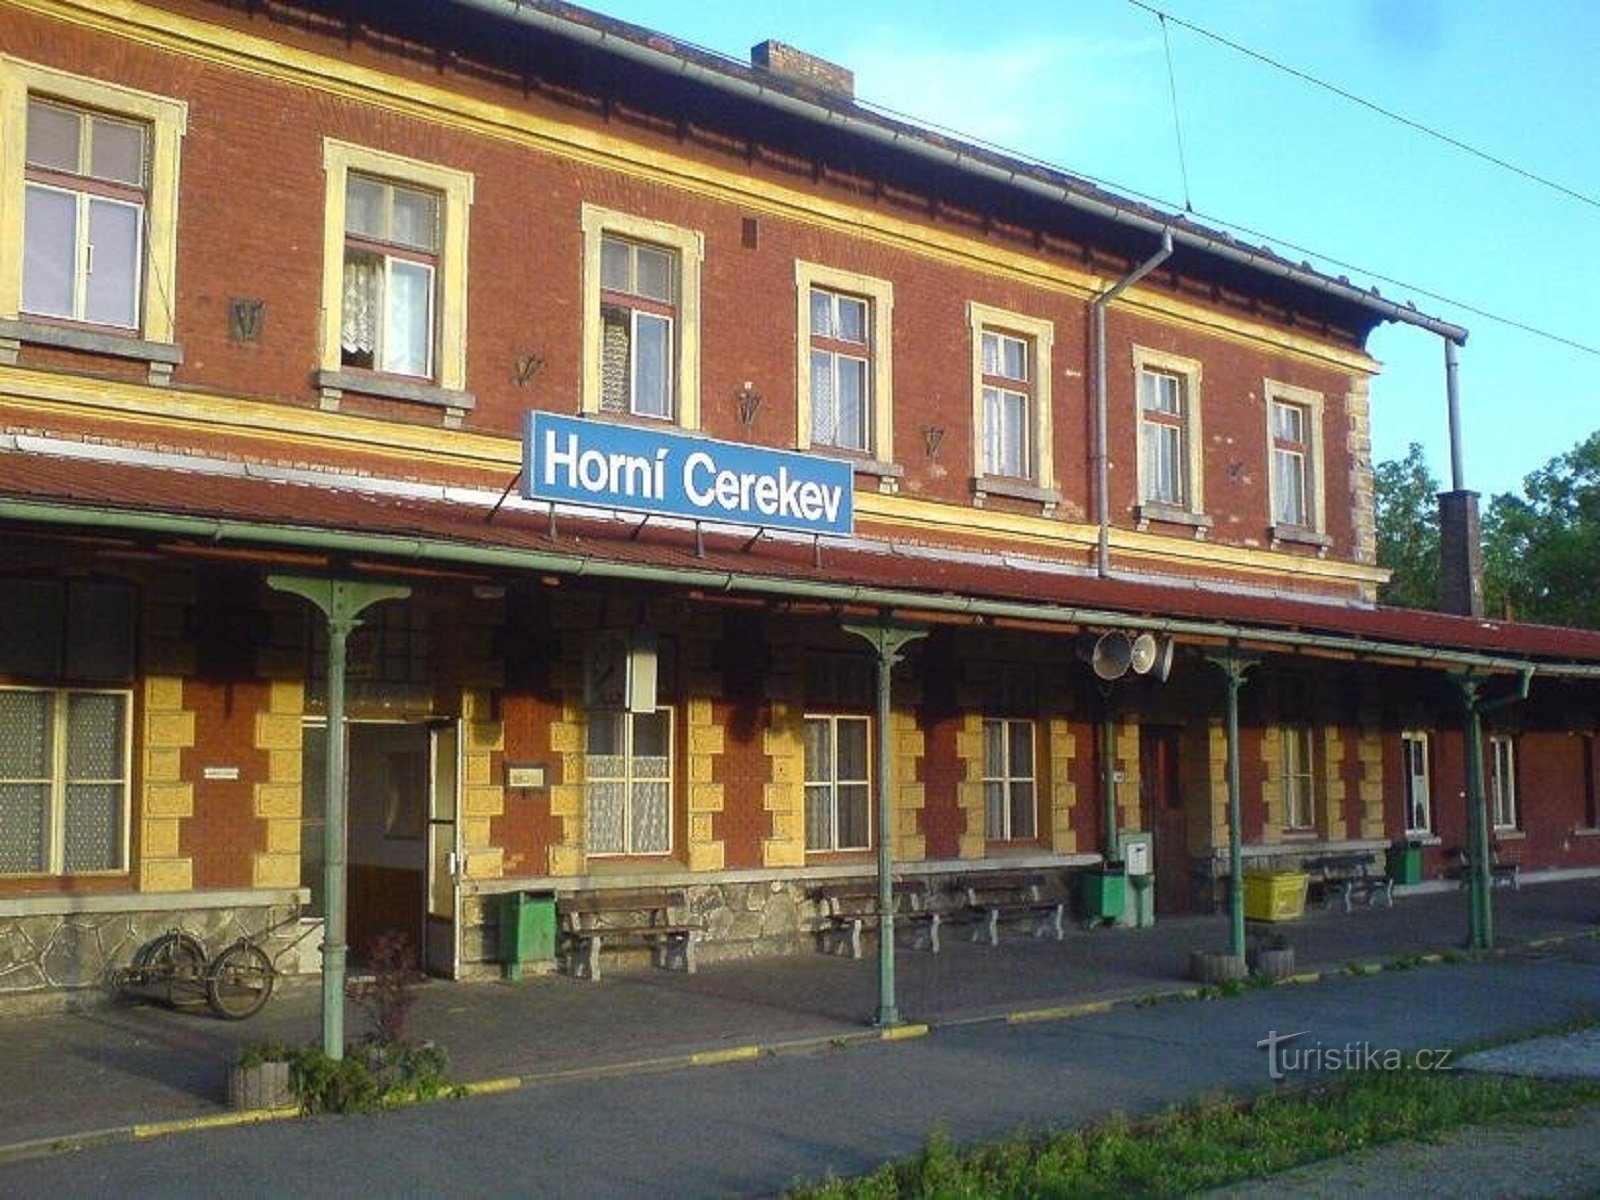 1. Σιδηροδρομικός σταθμός στο Horní Cerekv.